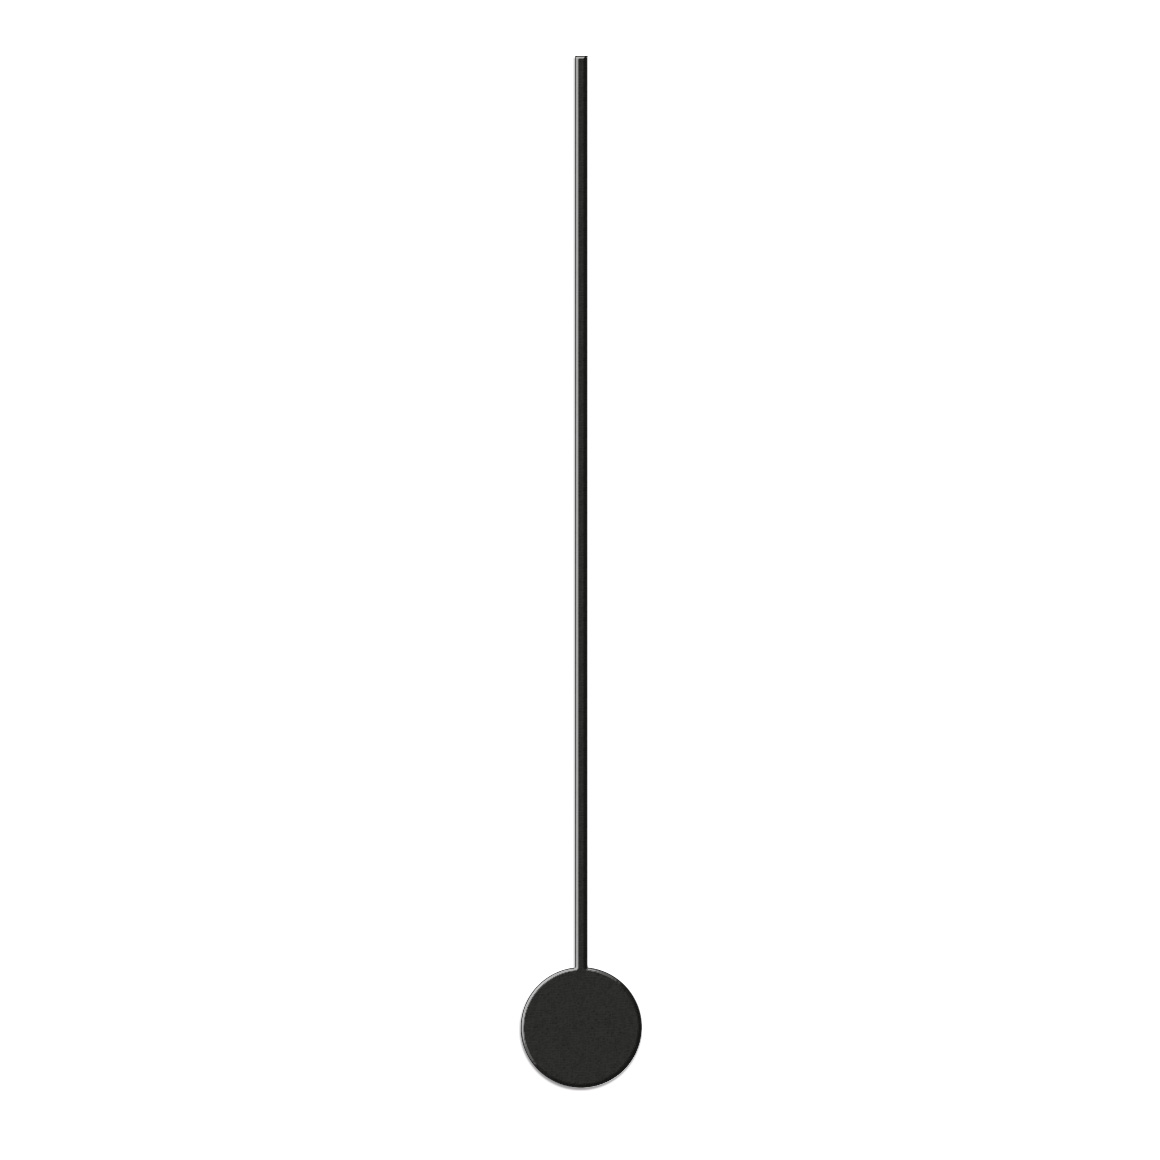 Sekundenzeiger, L 80 mm, Alu schwarz  für Standard Quarzwerke